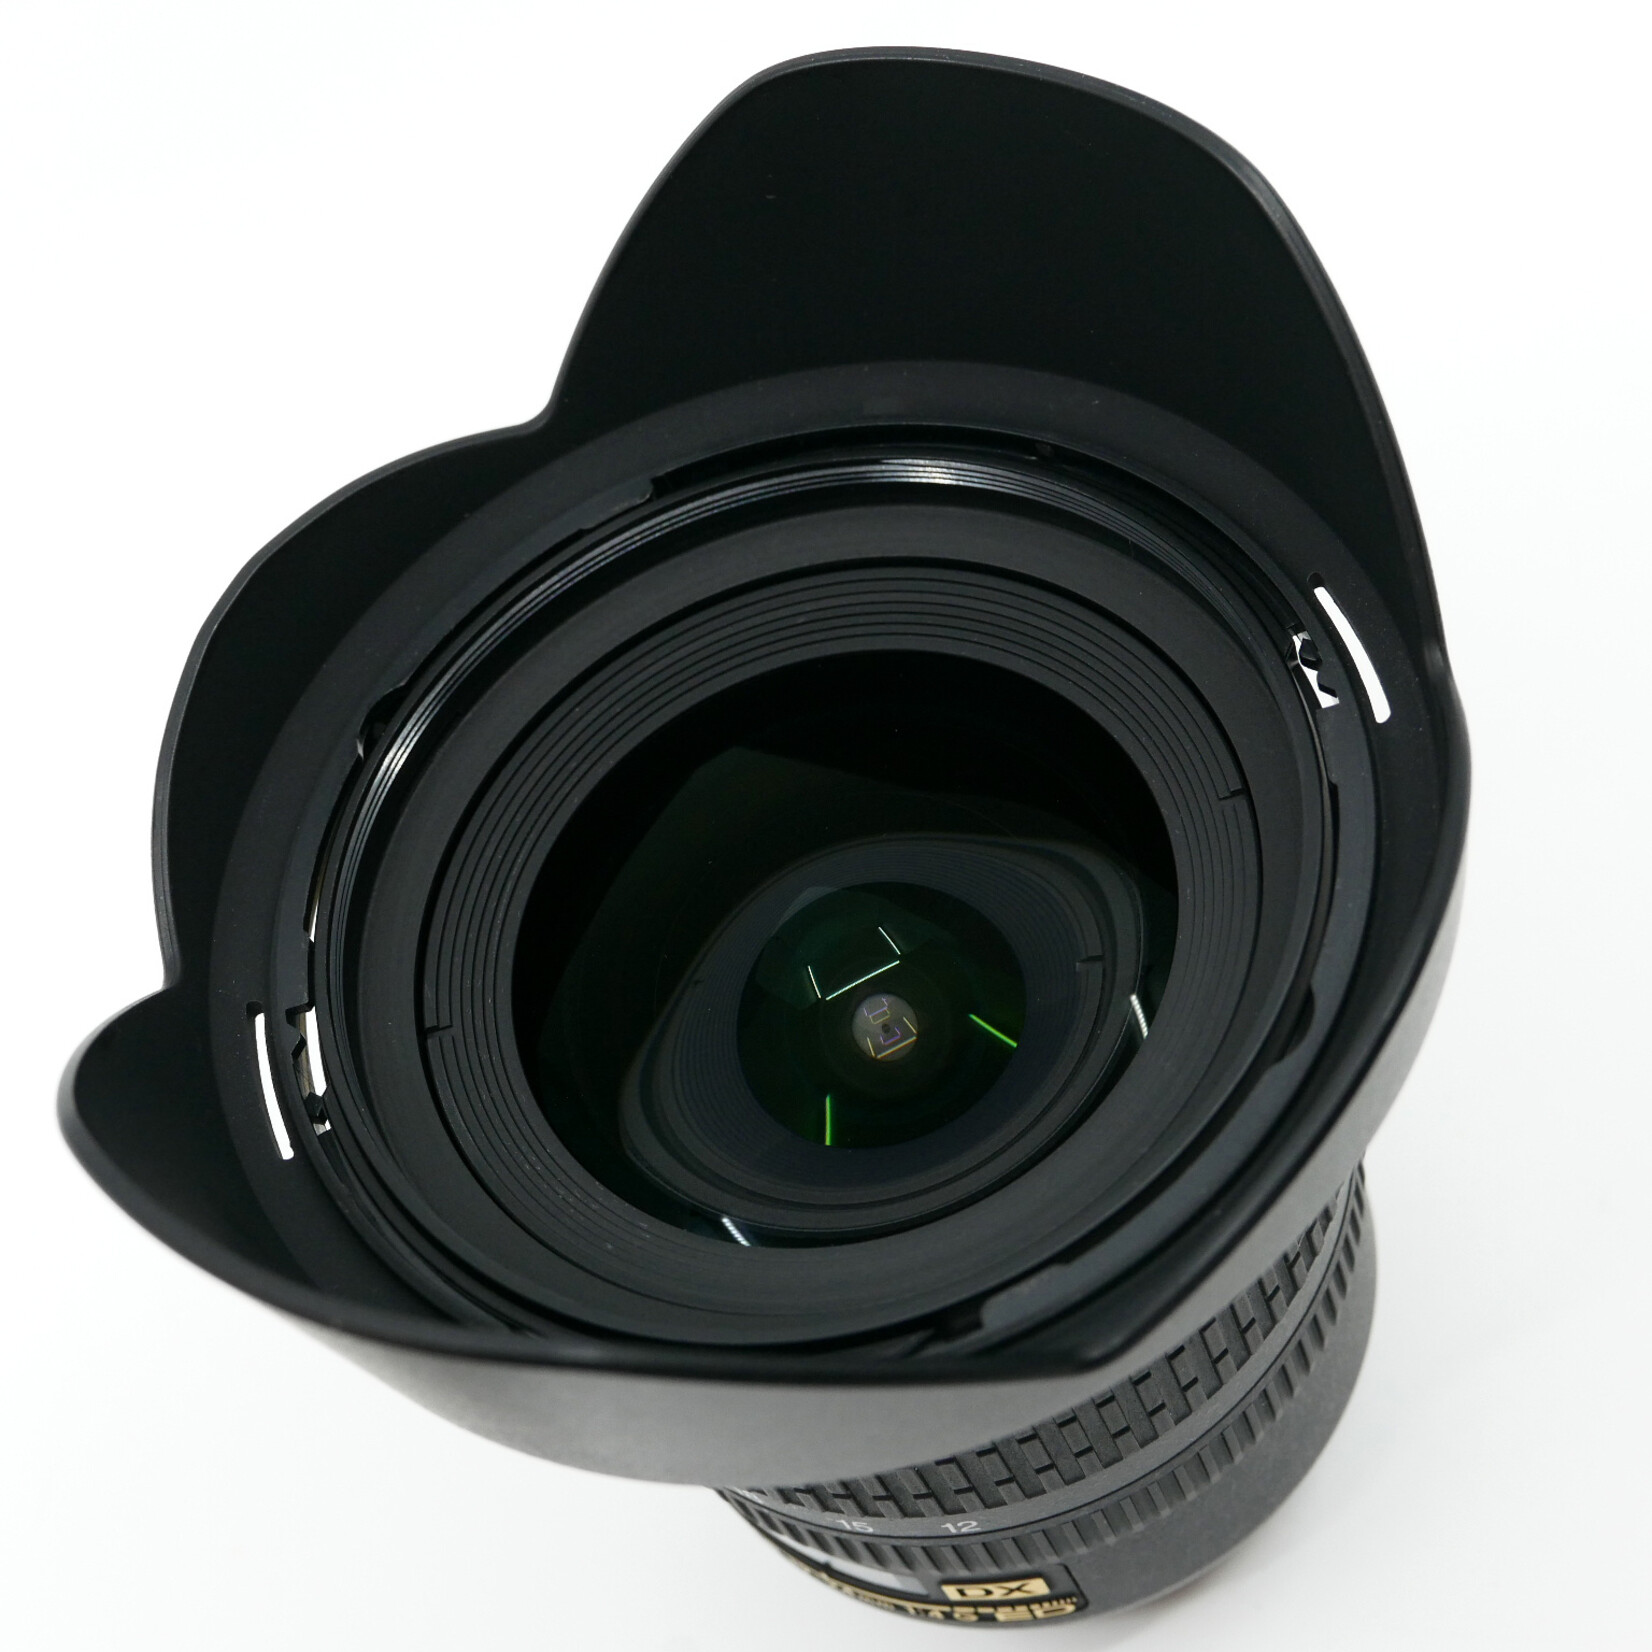 Nikon AF-S Nikkor 12-24mm f:4 G ED DX (Used)